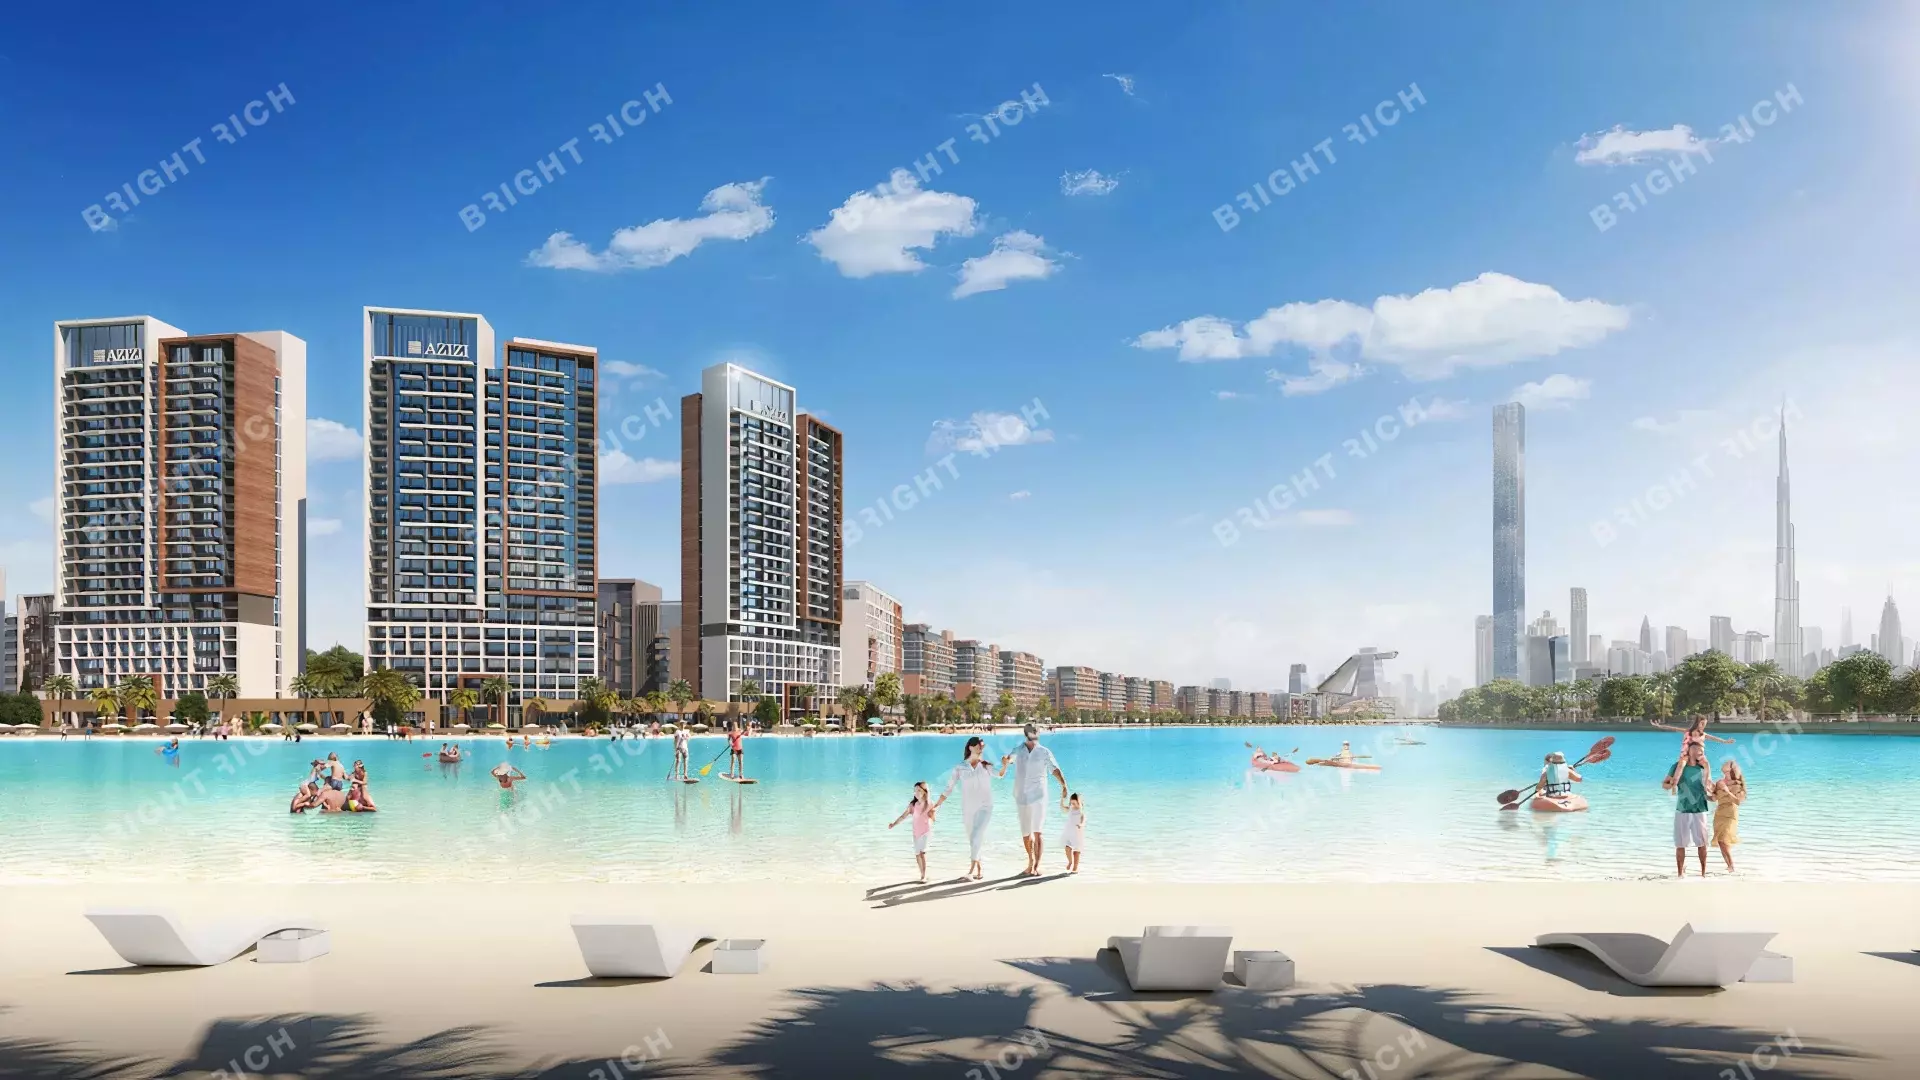 Azizi Riviera Building 10, apart complex in Dubai - 1